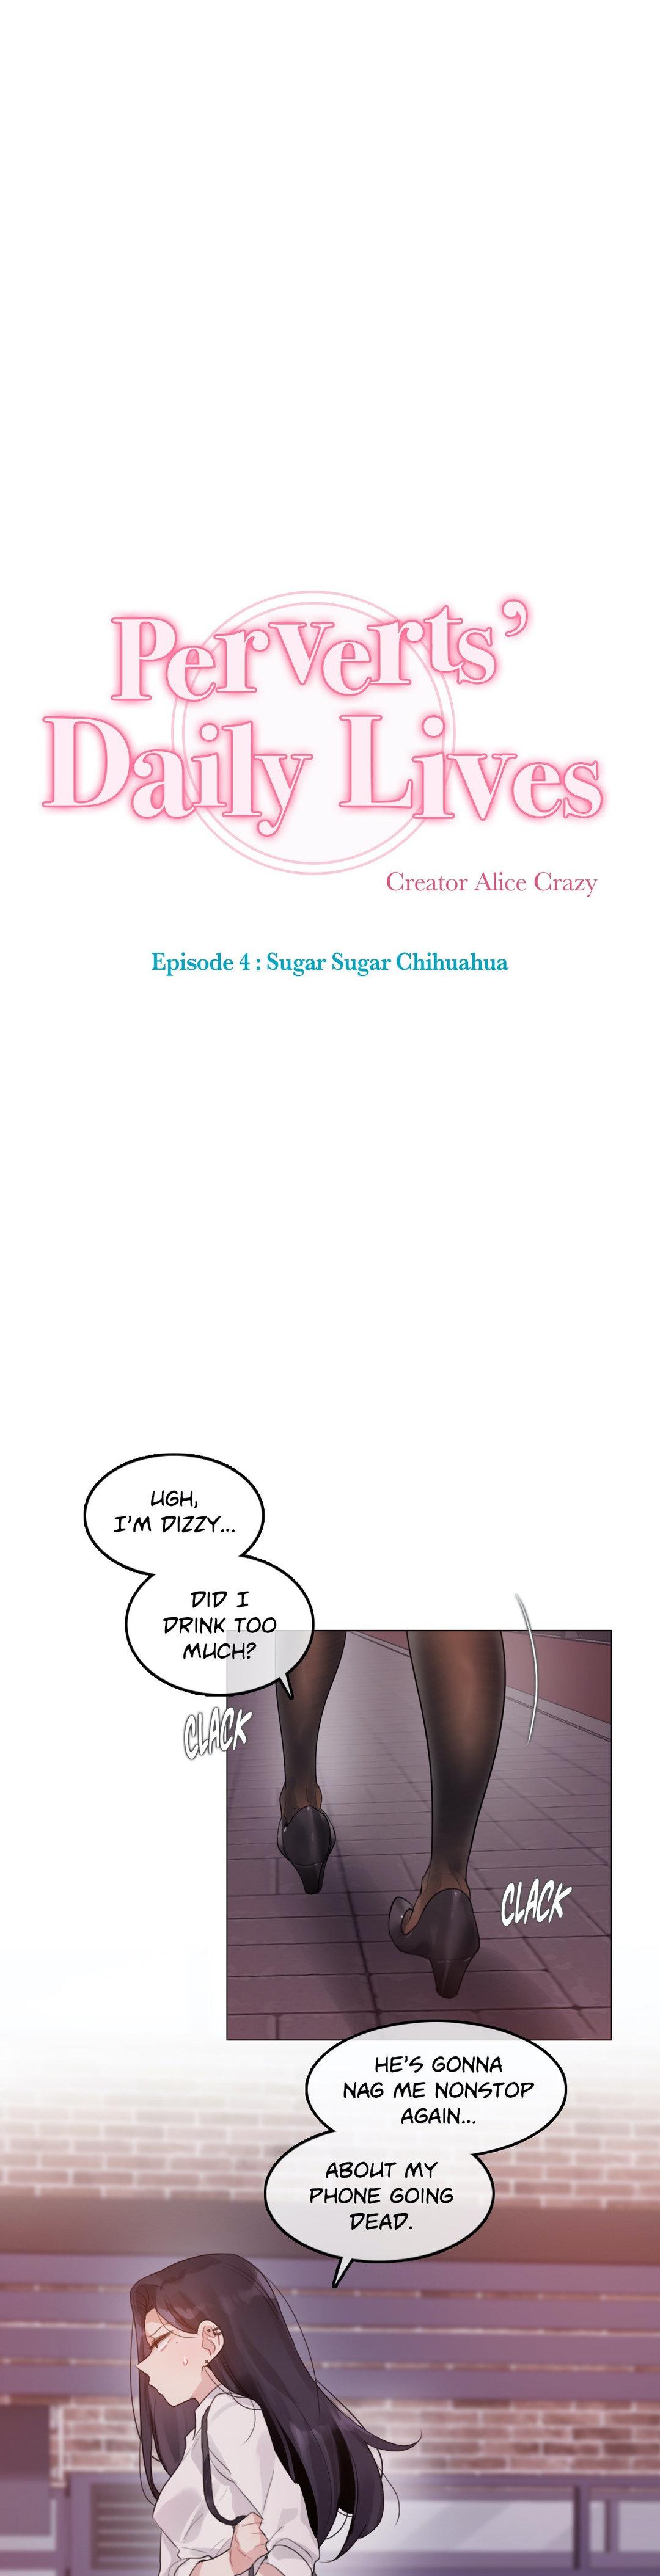 Perverts' Daily Lives Episode 4: Sugar Sugar Chihuahua 124